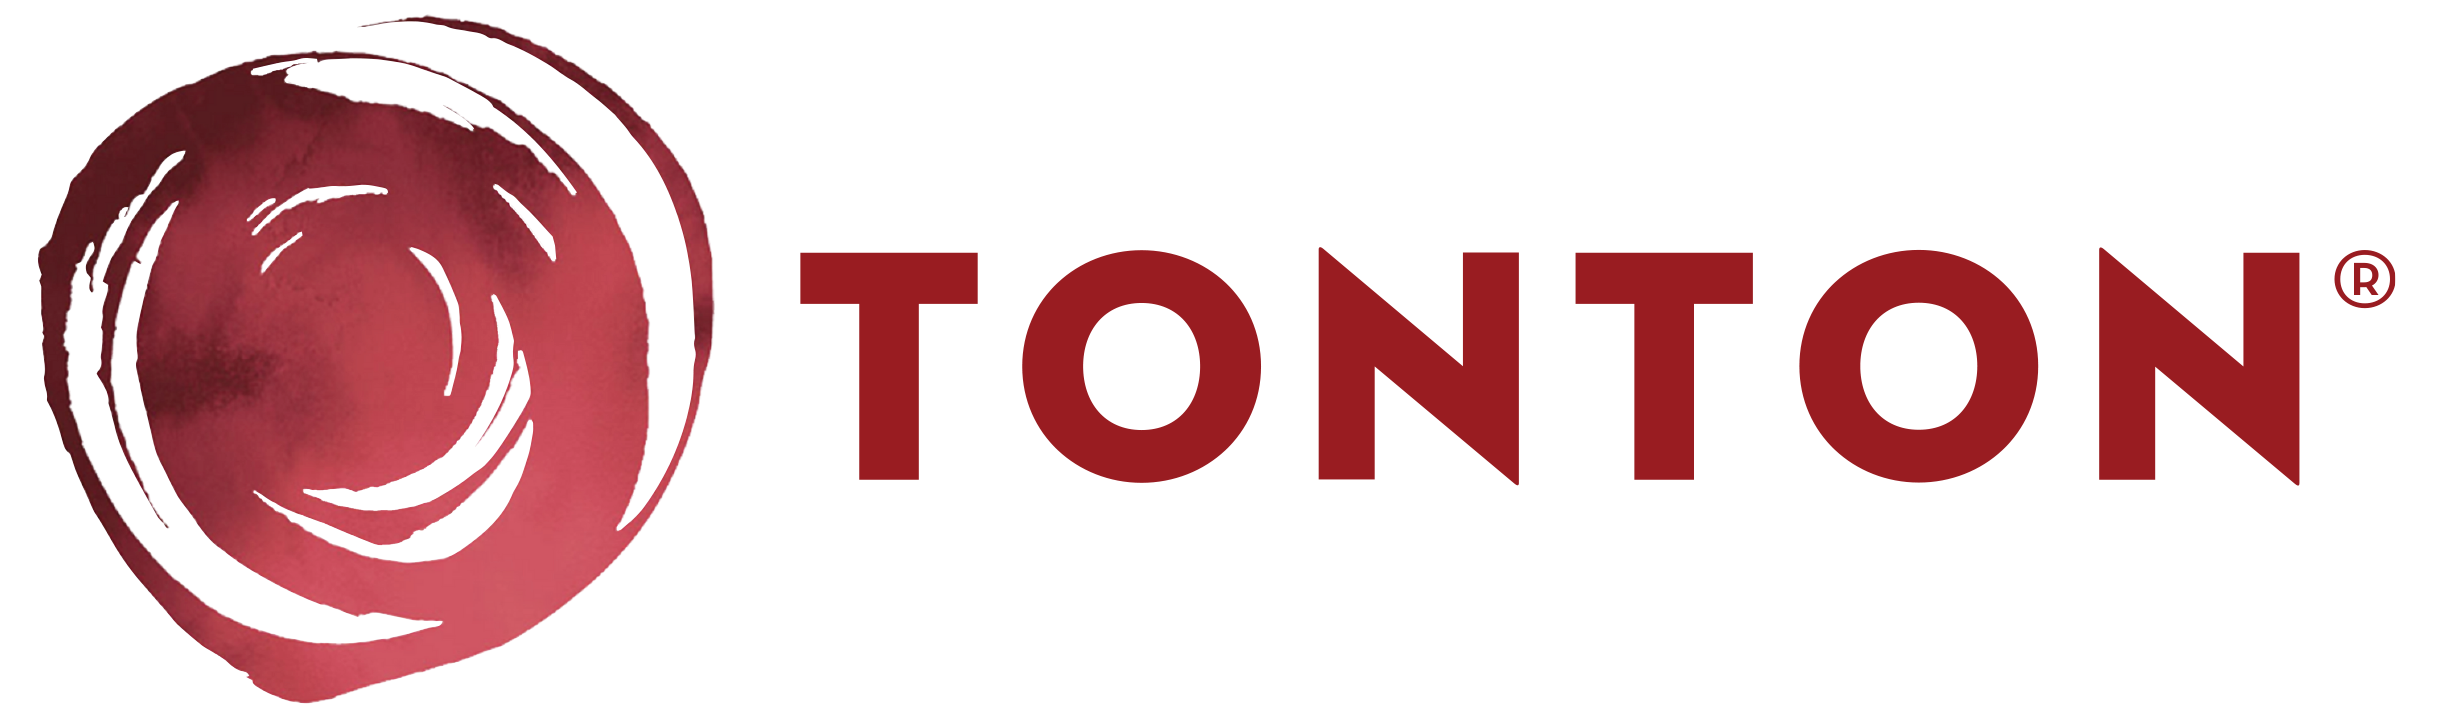 TonTon® - Famous Japanese Sauces